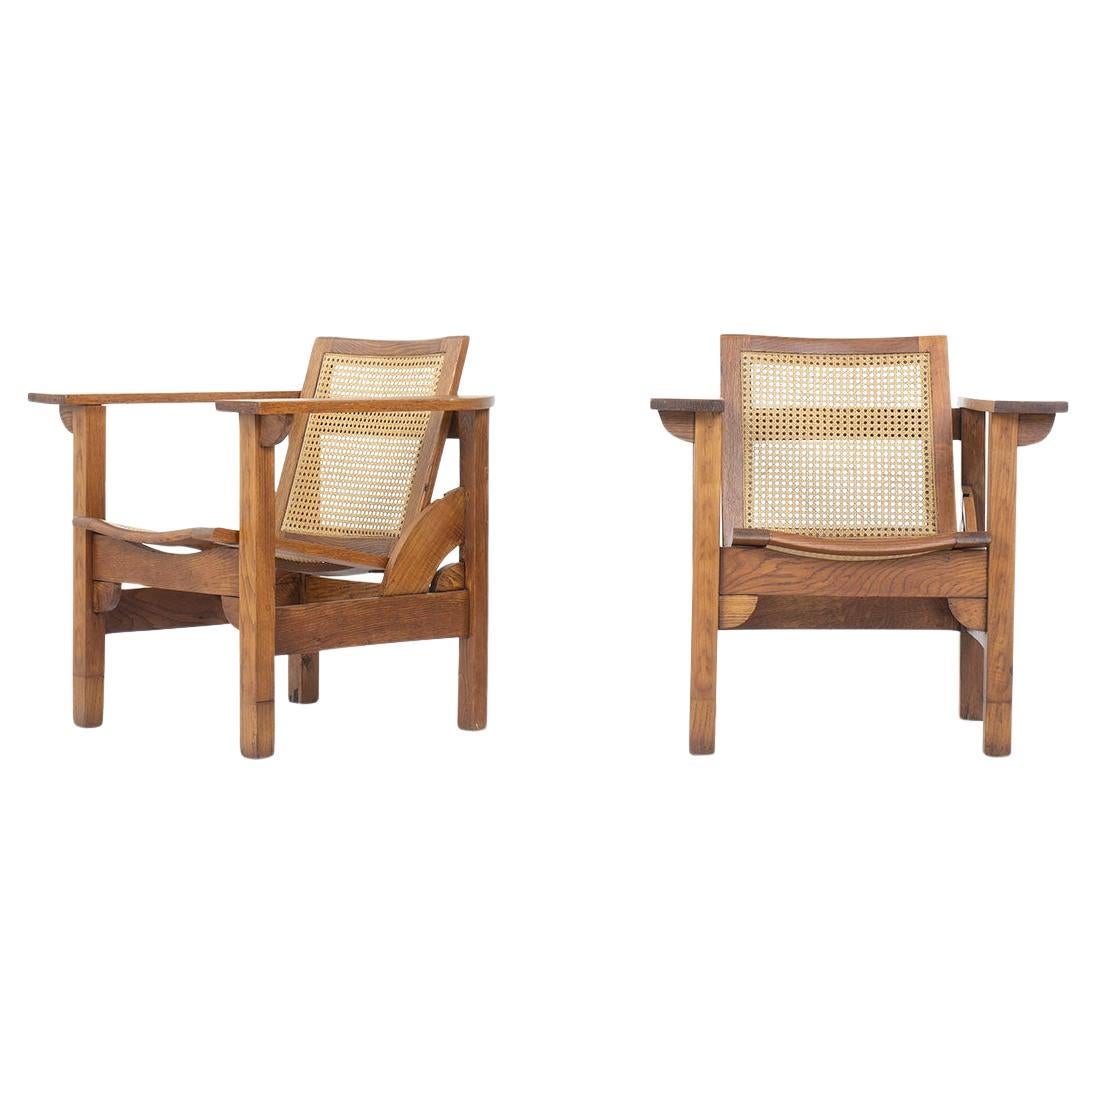 Ensemble de 2 fauteuils Oak par Pierre Dariel en chêne et cannage, 1930